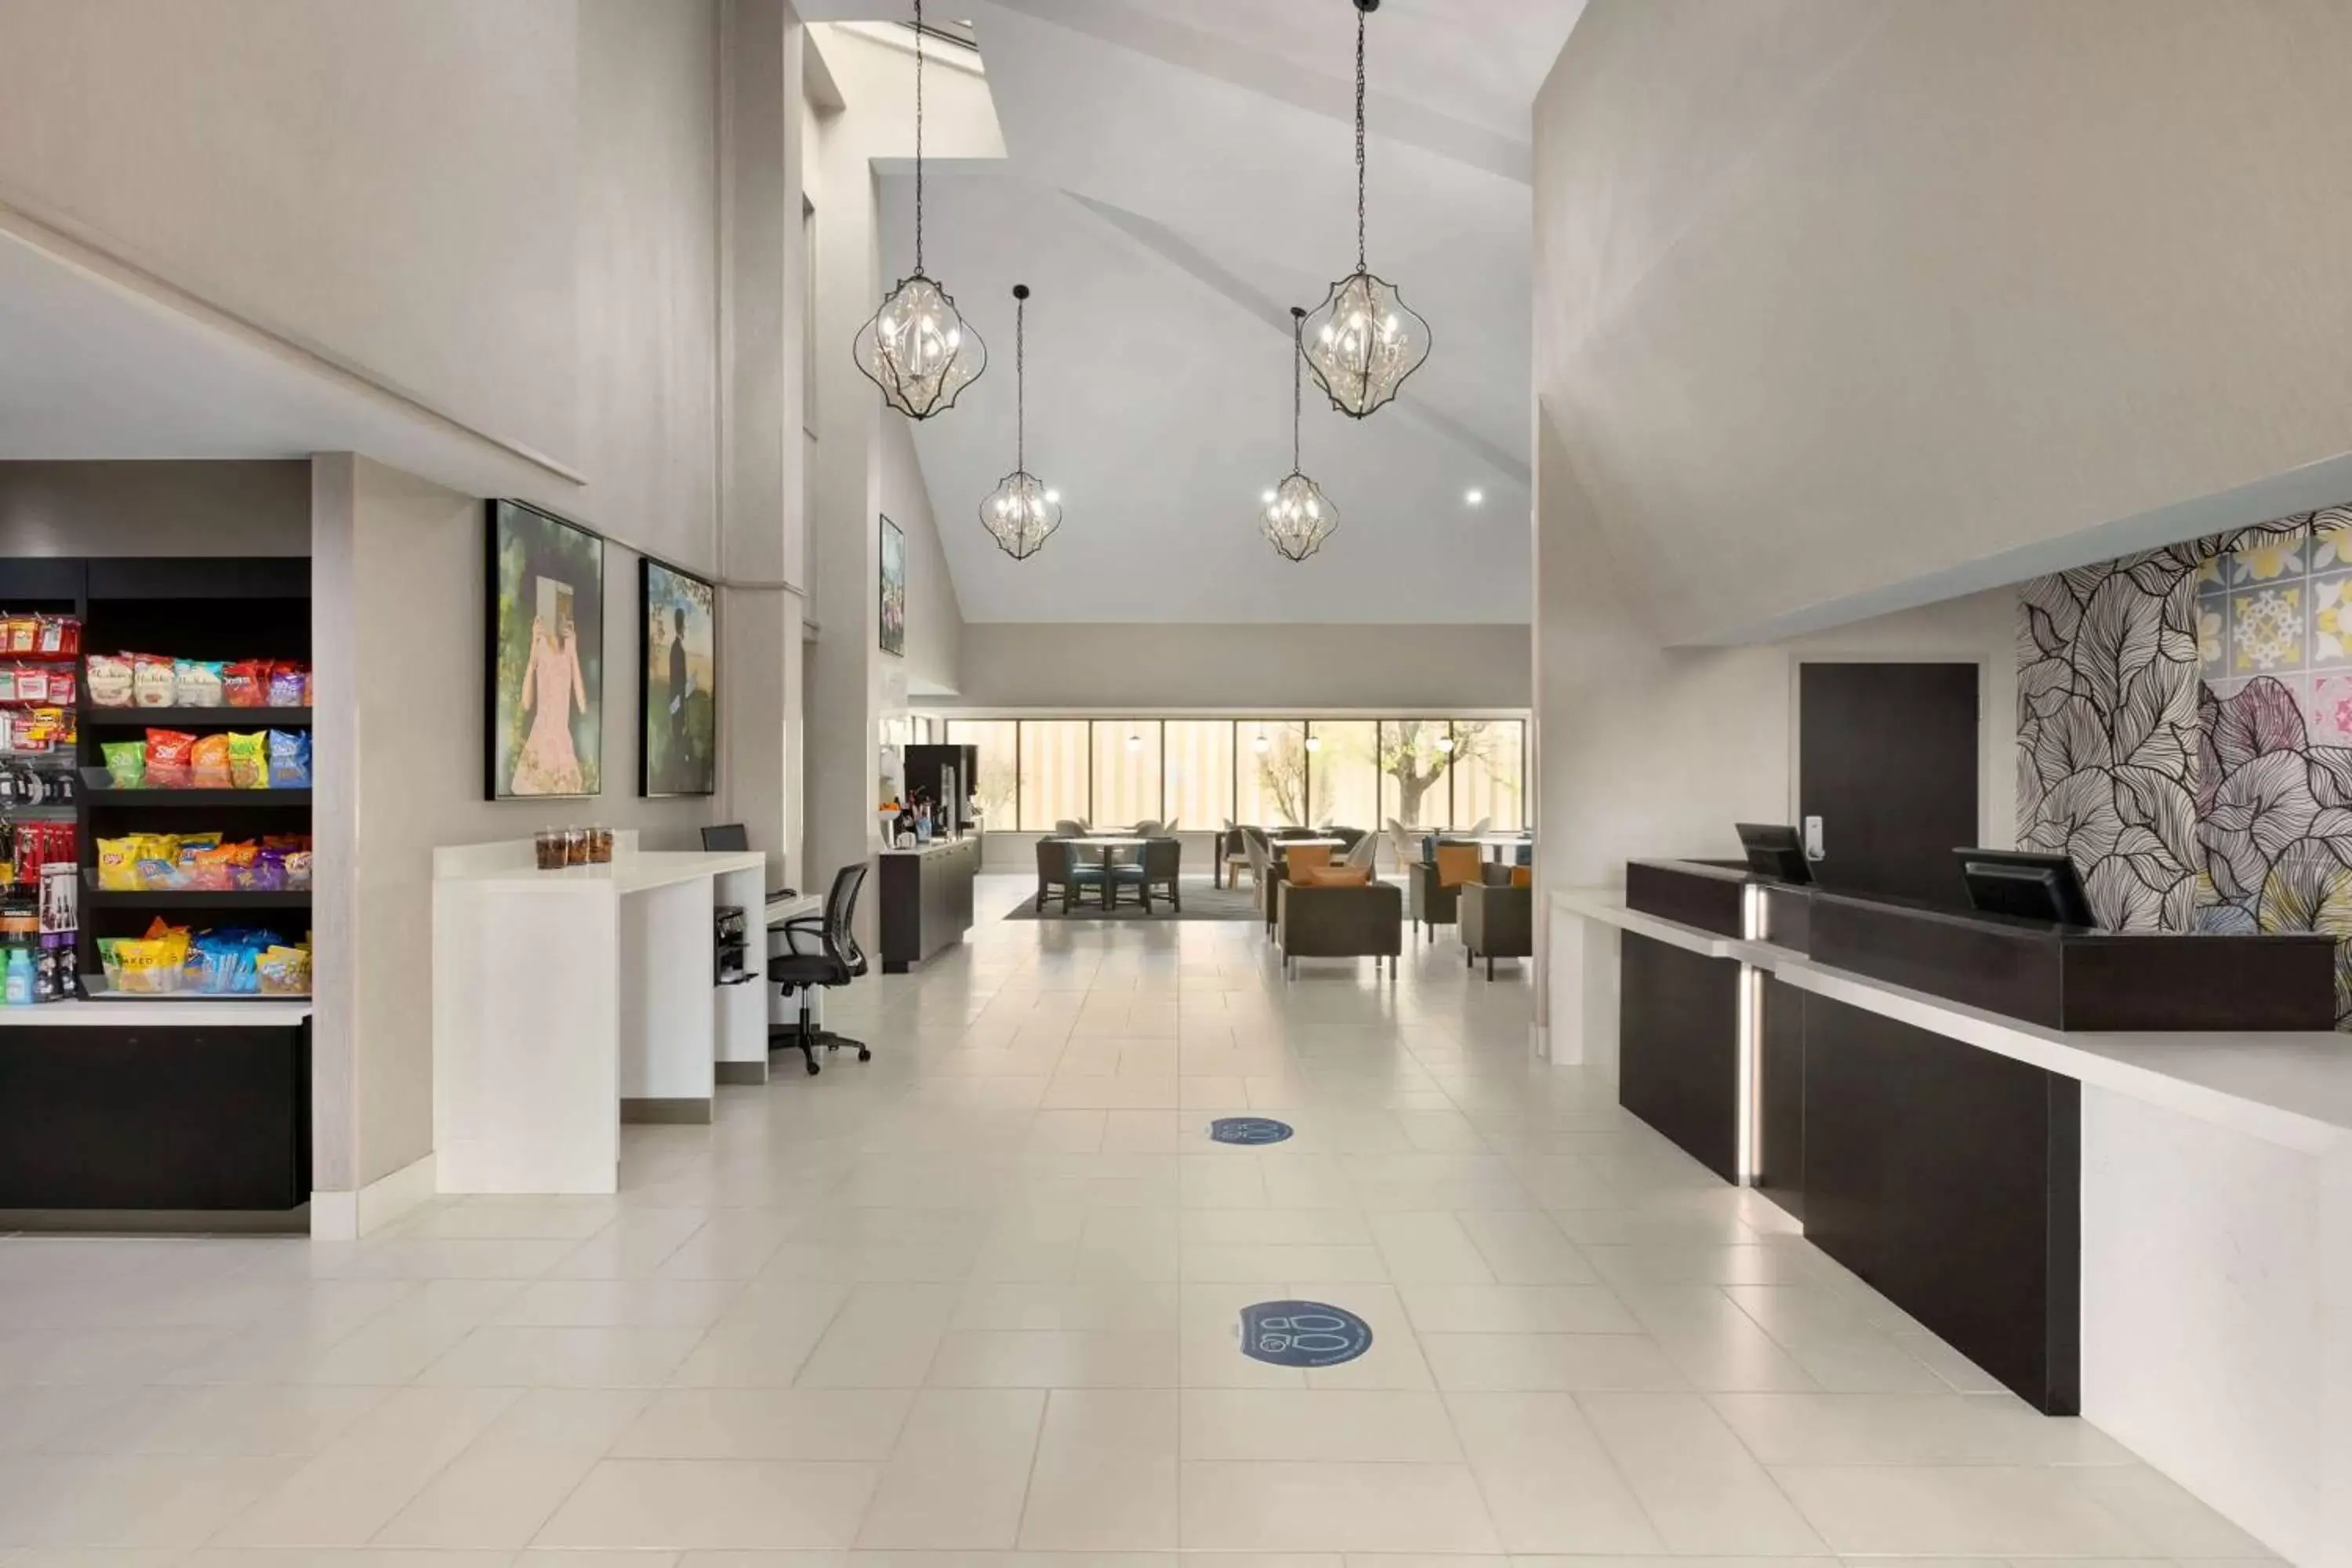 Lobby or reception in La Quinta Inn & Suites by Wyndham Dothan